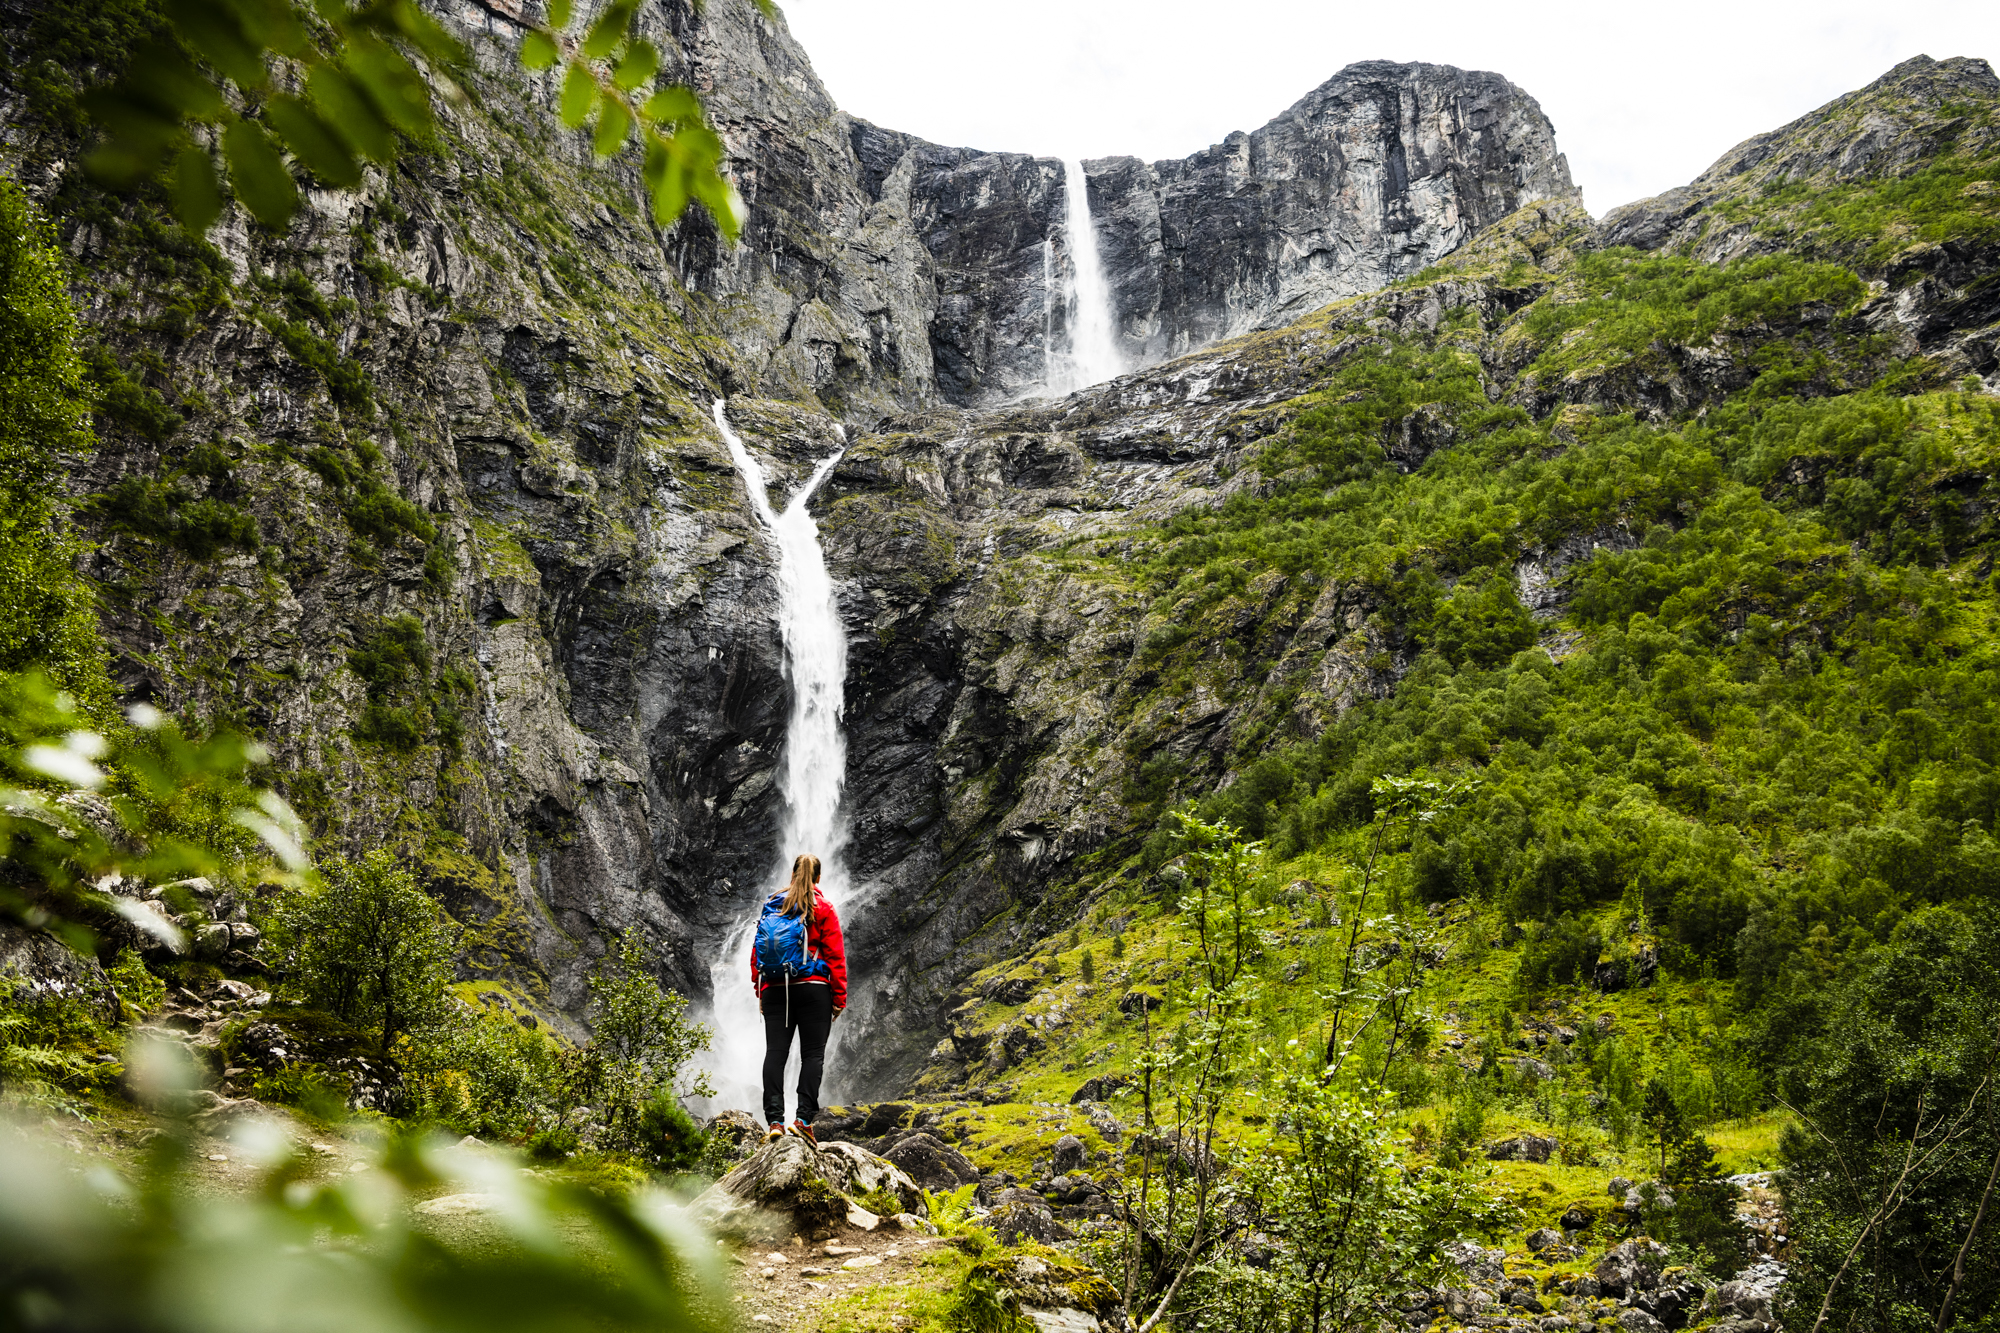 Mardalsfossen waterfall